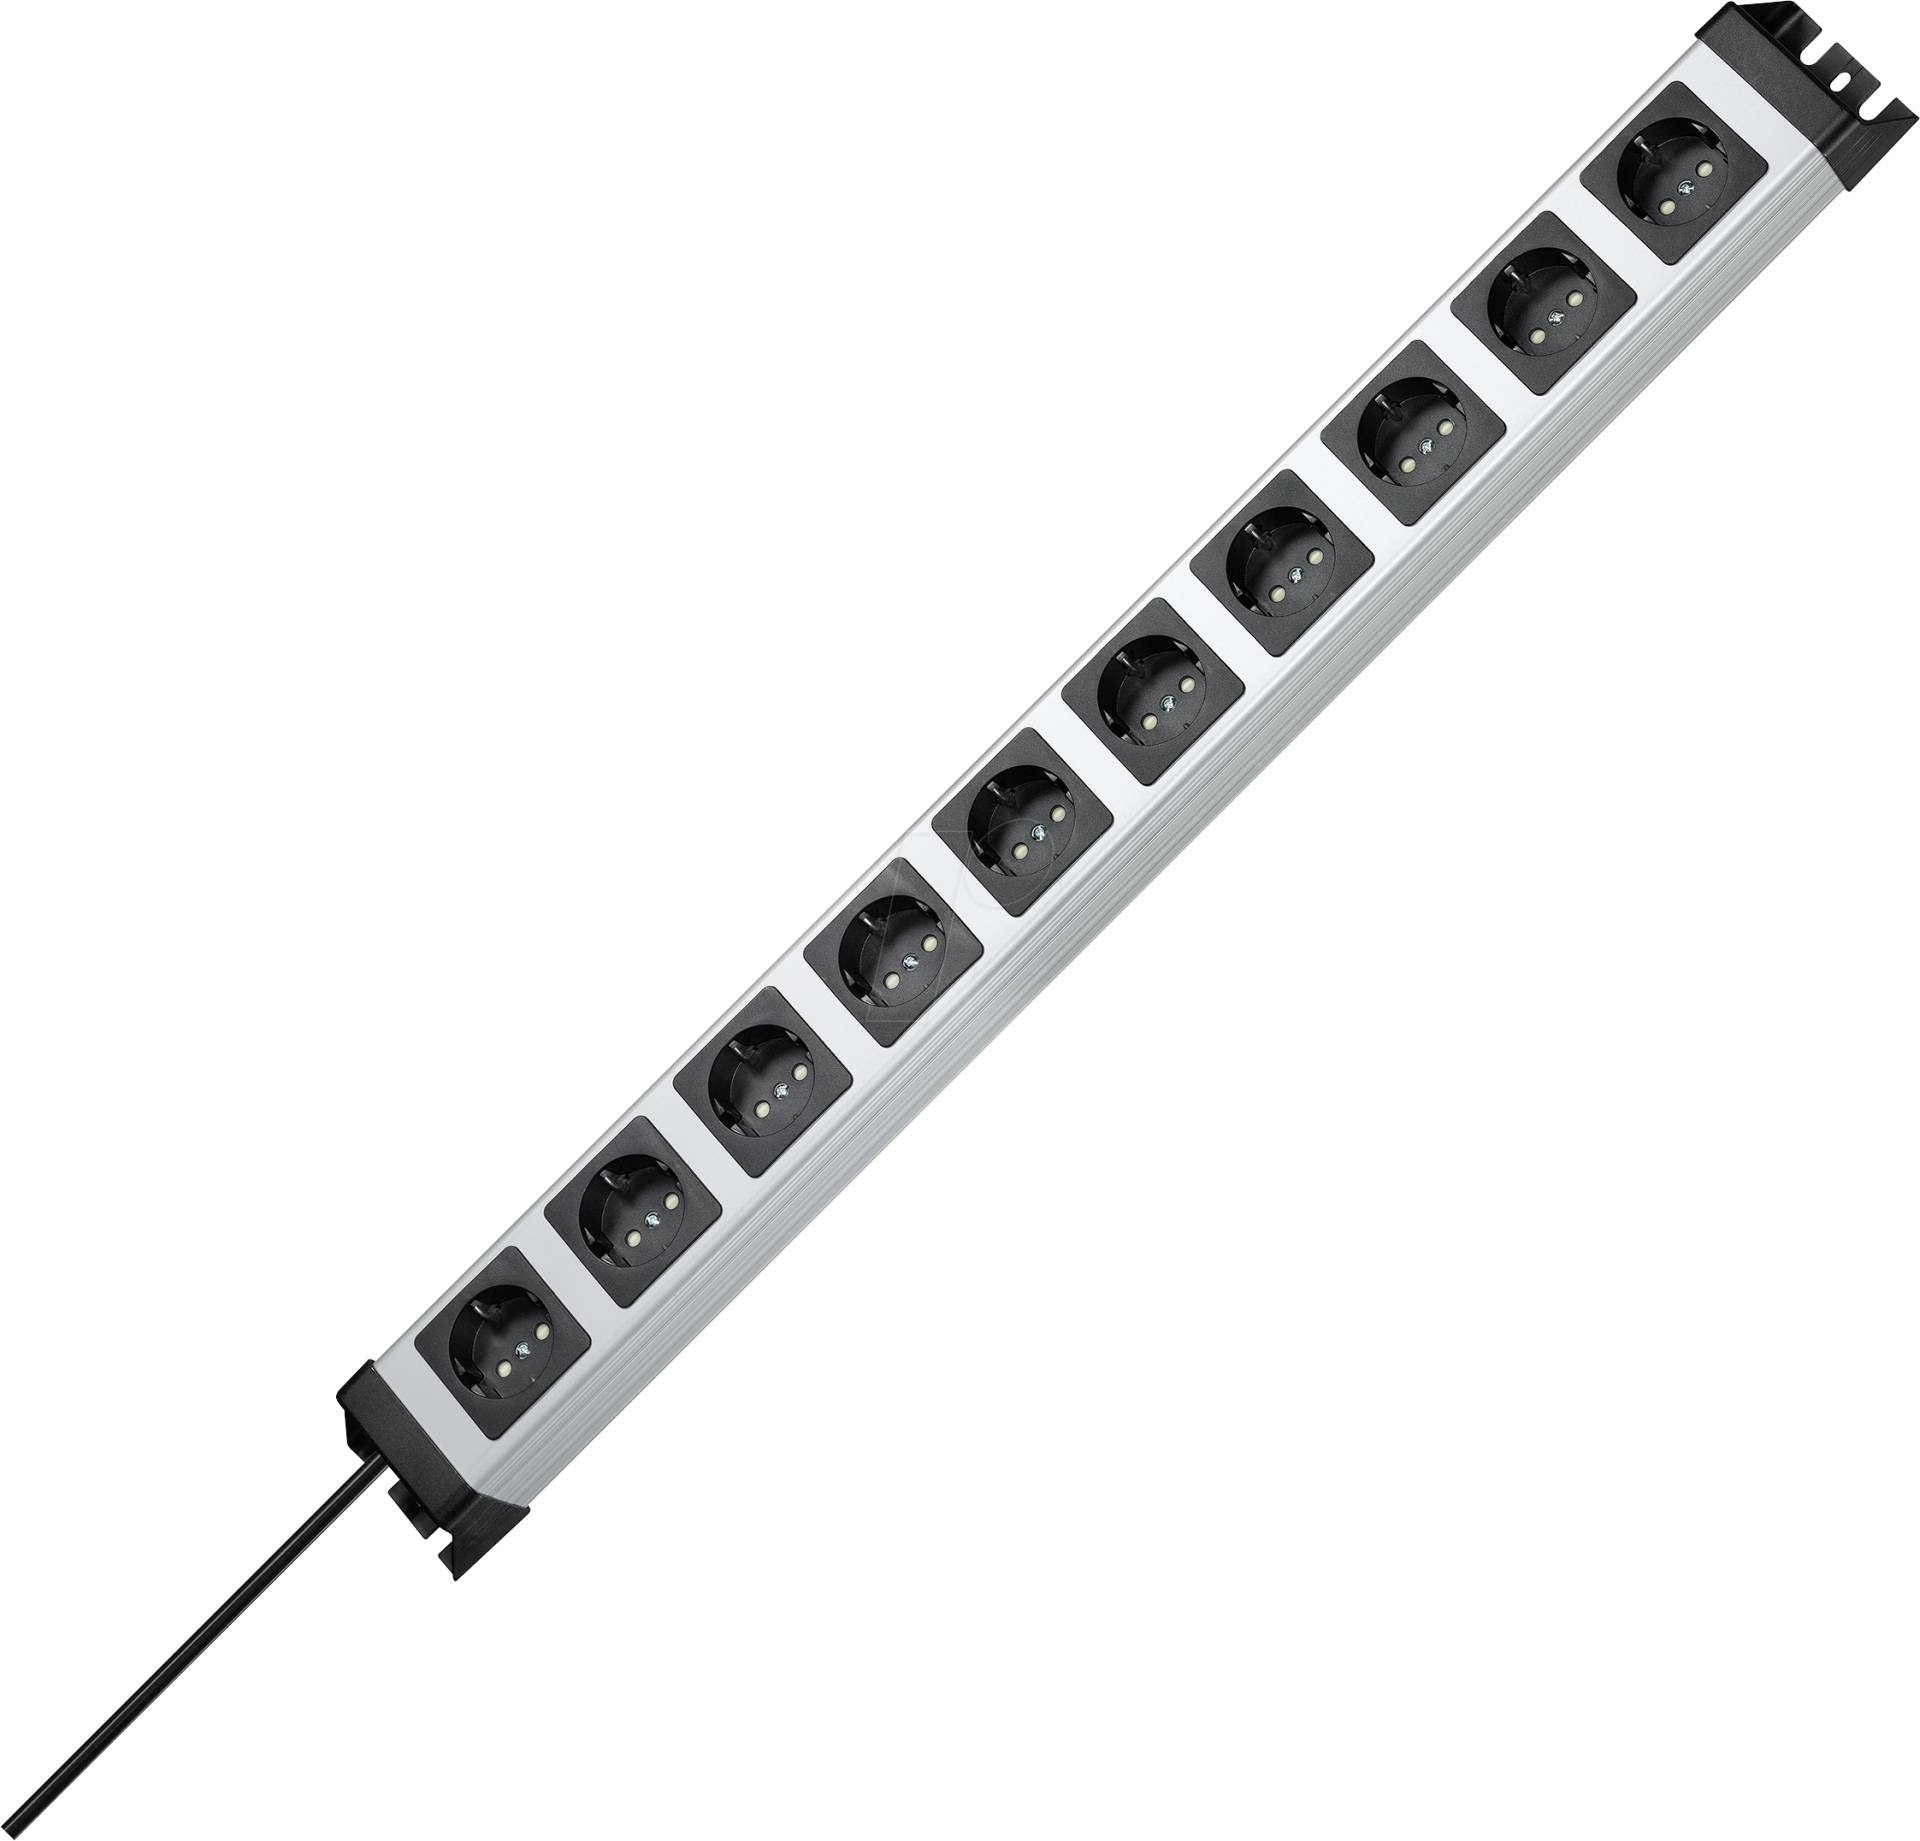 PVERSAL 10 - Steckdosenleiste POWERversal, 10-fach, 1,4 m, silber/schwarz von Kopp